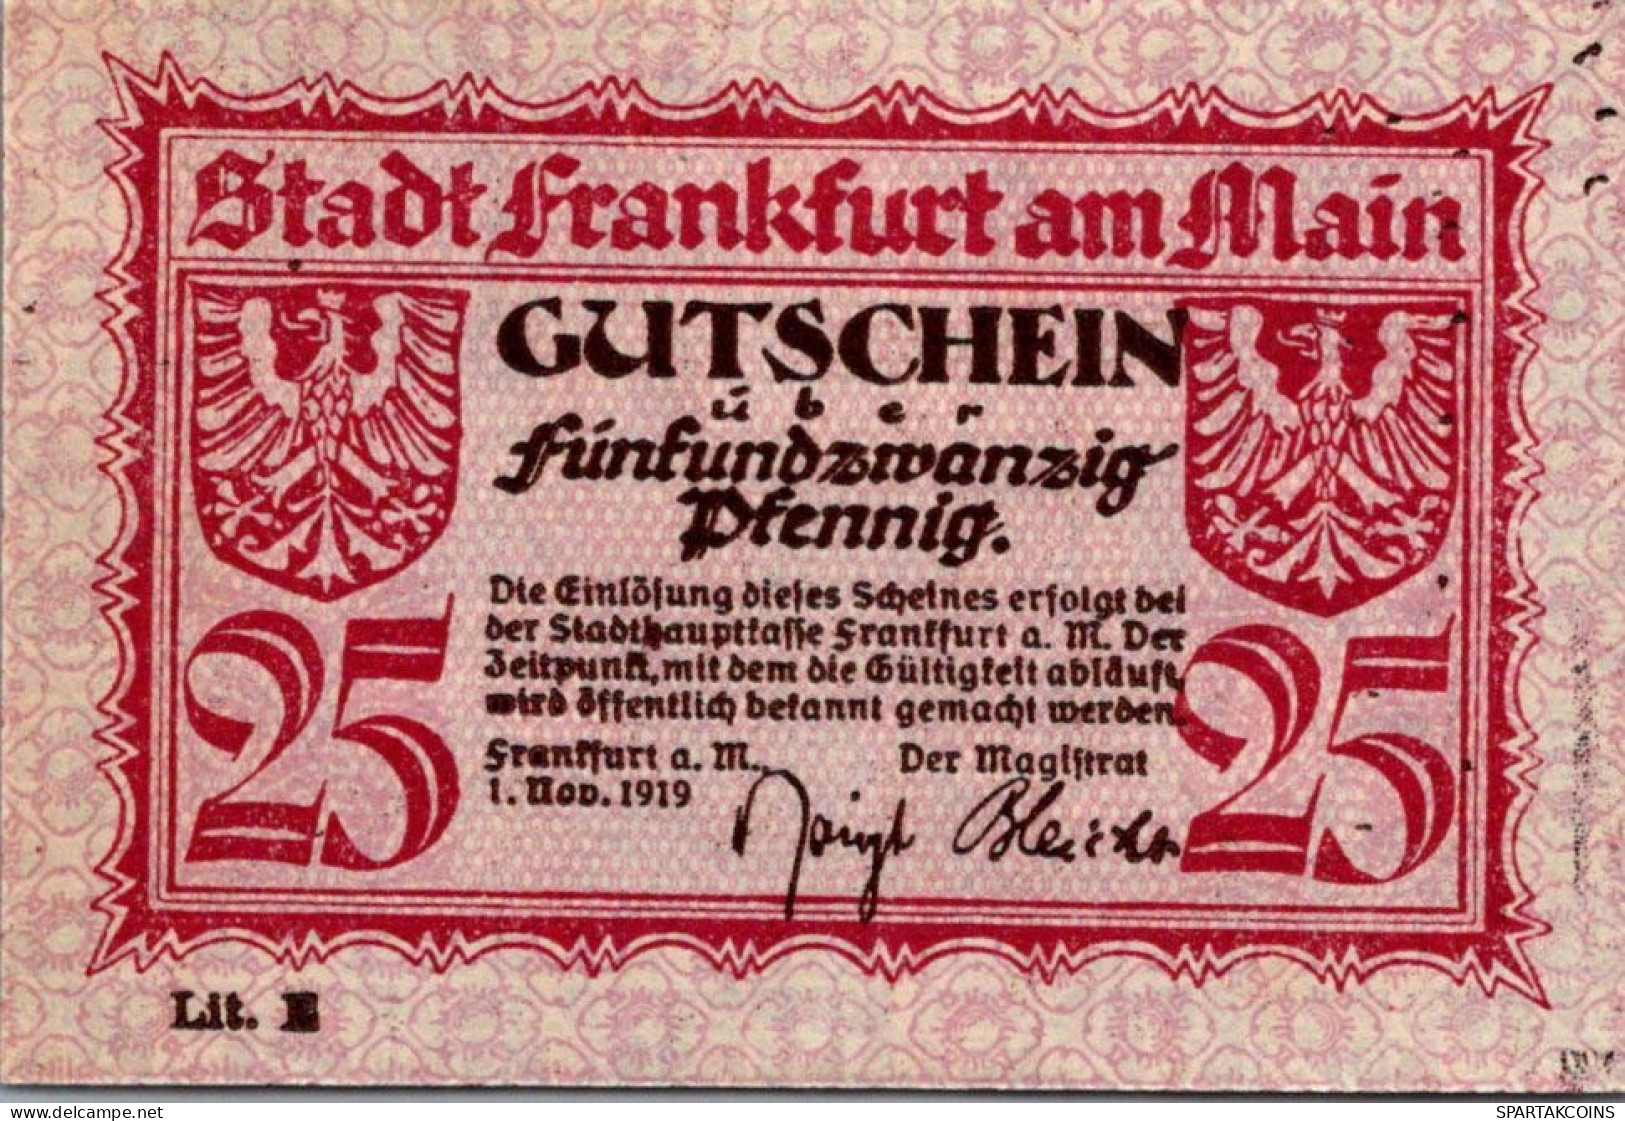 25 PFENNIG 1919 Stadt FRANKFURT AM MAIN Hesse-Nassau UNC DEUTSCHLAND #PH975 - [11] Emisiones Locales